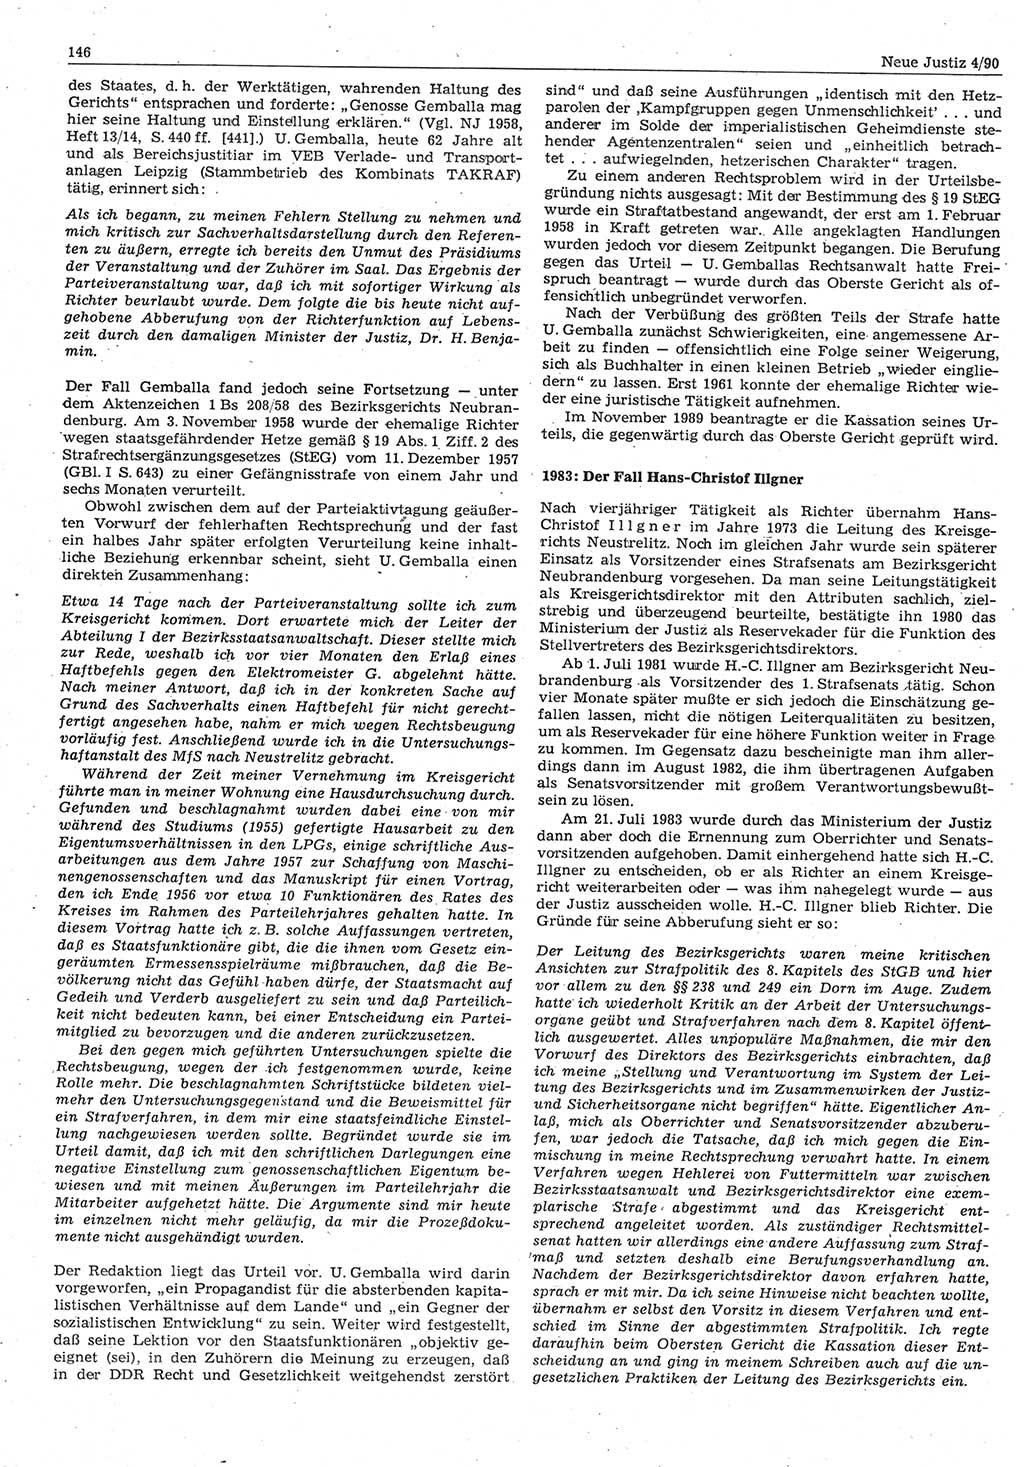 Neue Justiz (NJ), Zeitschrift für Rechtsetzung und Rechtsanwendung [Deutsche Demokratische Republik (DDR)], 44. Jahrgang 1990, Seite 146 (NJ DDR 1990, S. 146)